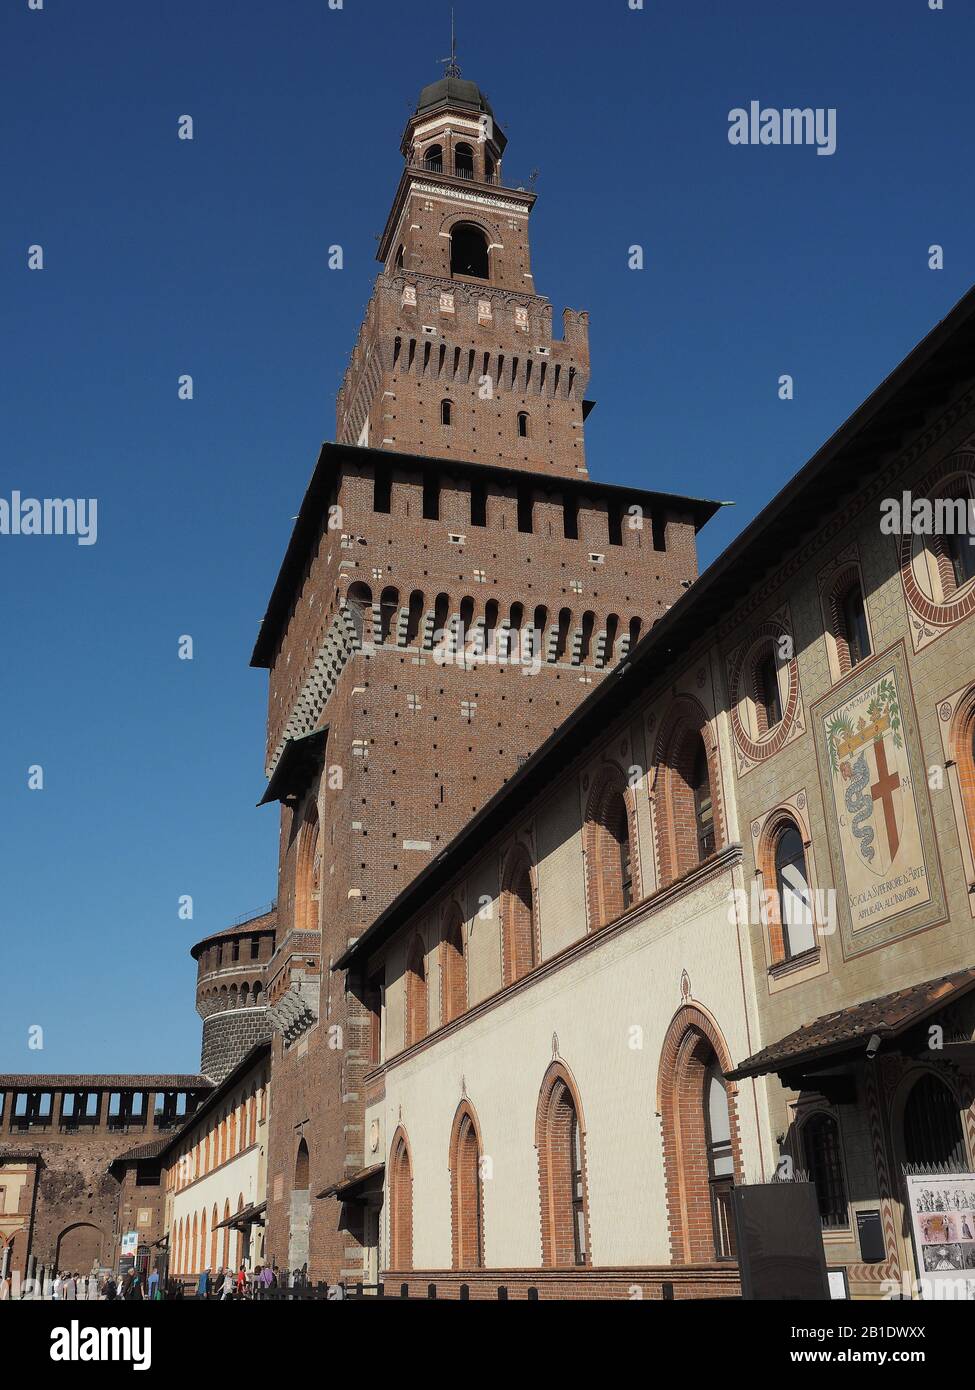 Italy, Lombardy, Milan, Castello Sforzesco (Sforza Castle), built in the 15th century by Duke of Milan Francesco Sforza Stock Photo